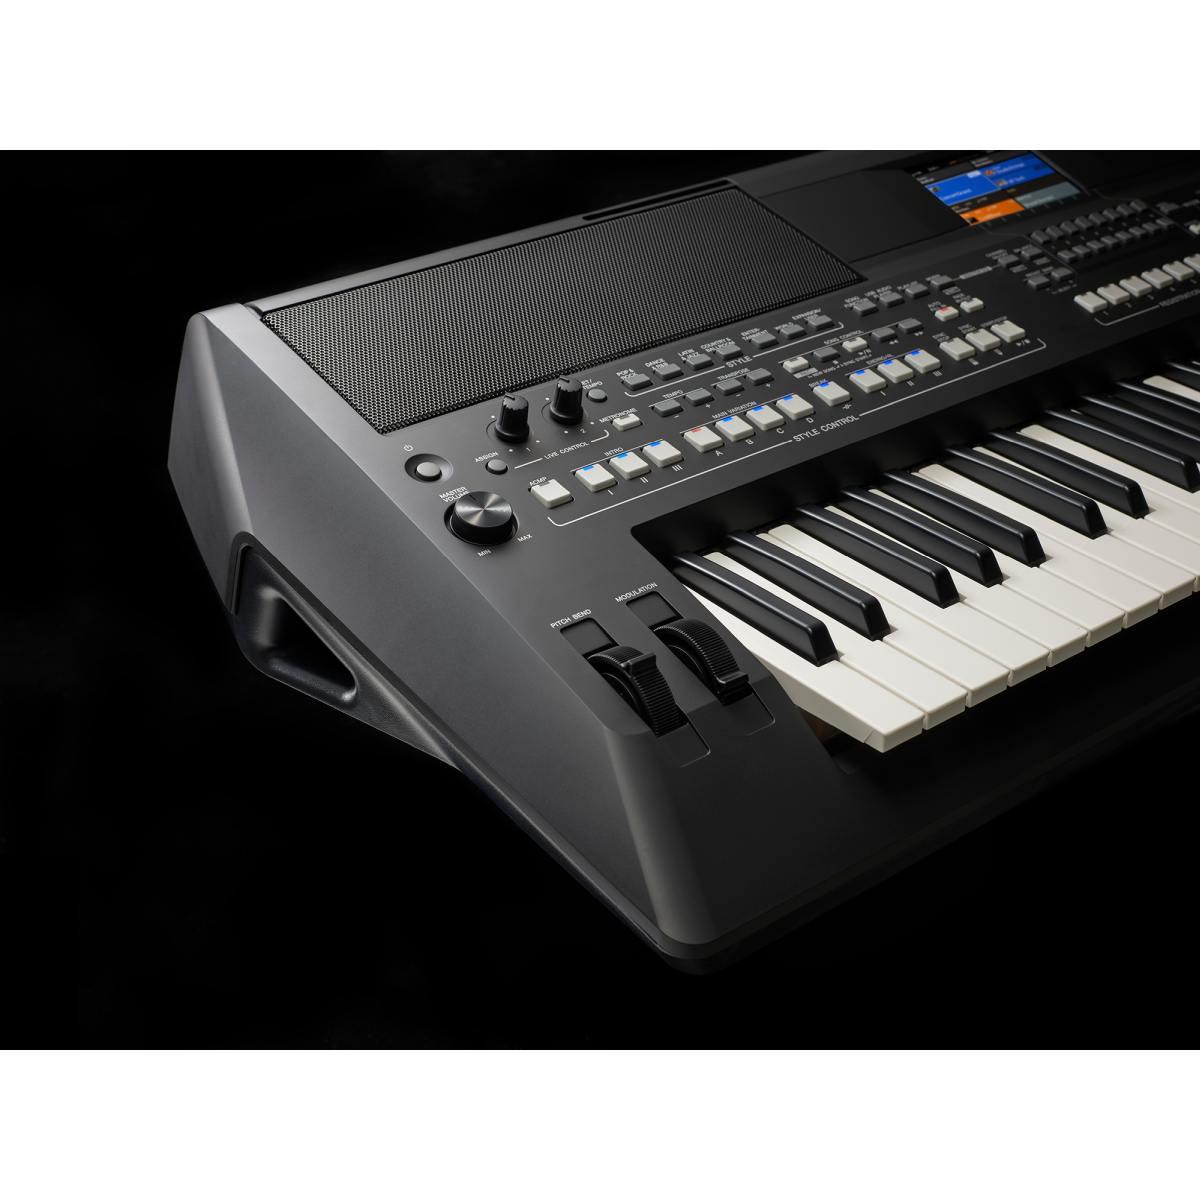 Yamaha psr sx600 tastiera 61 tasti